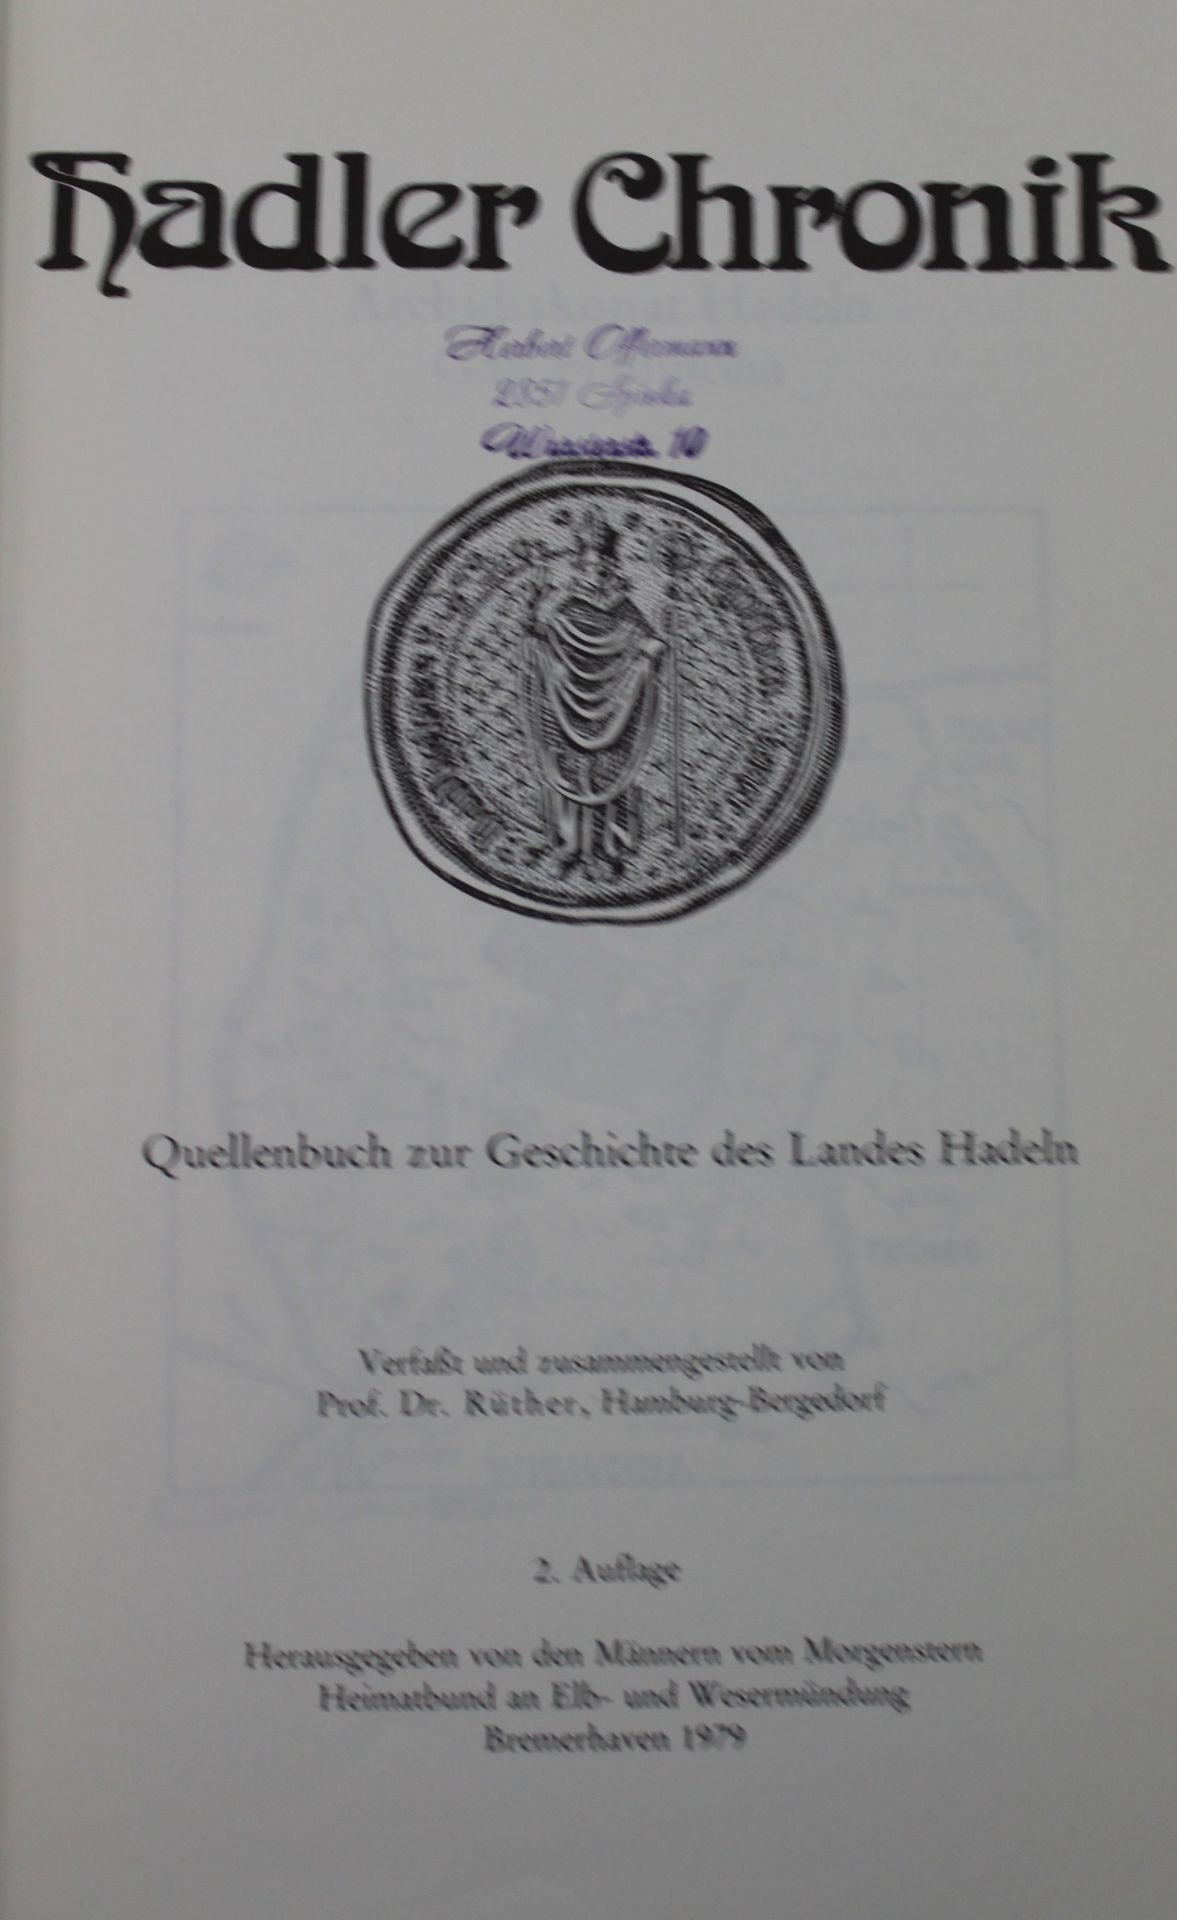 Hadler Chronik, 2. Aufl. 1979 - Bild 2 aus 3